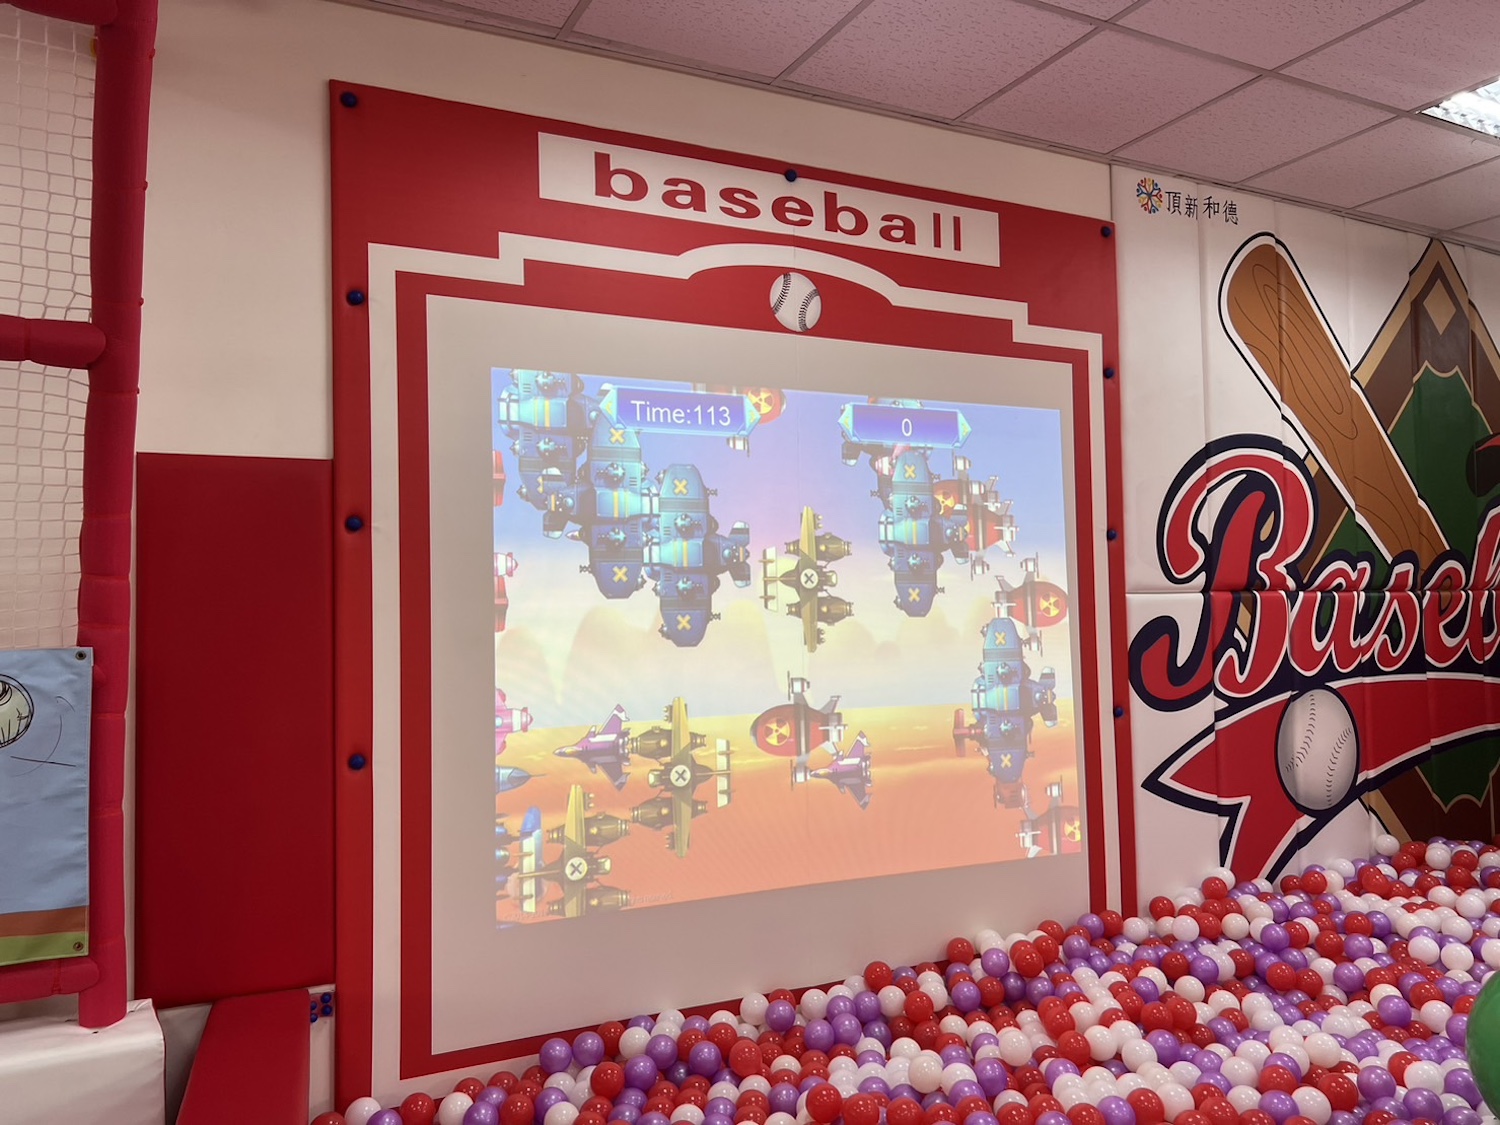 投球互動牆結合數位遊戲練習揮棒投球。圖/天母棒龍樂園提供